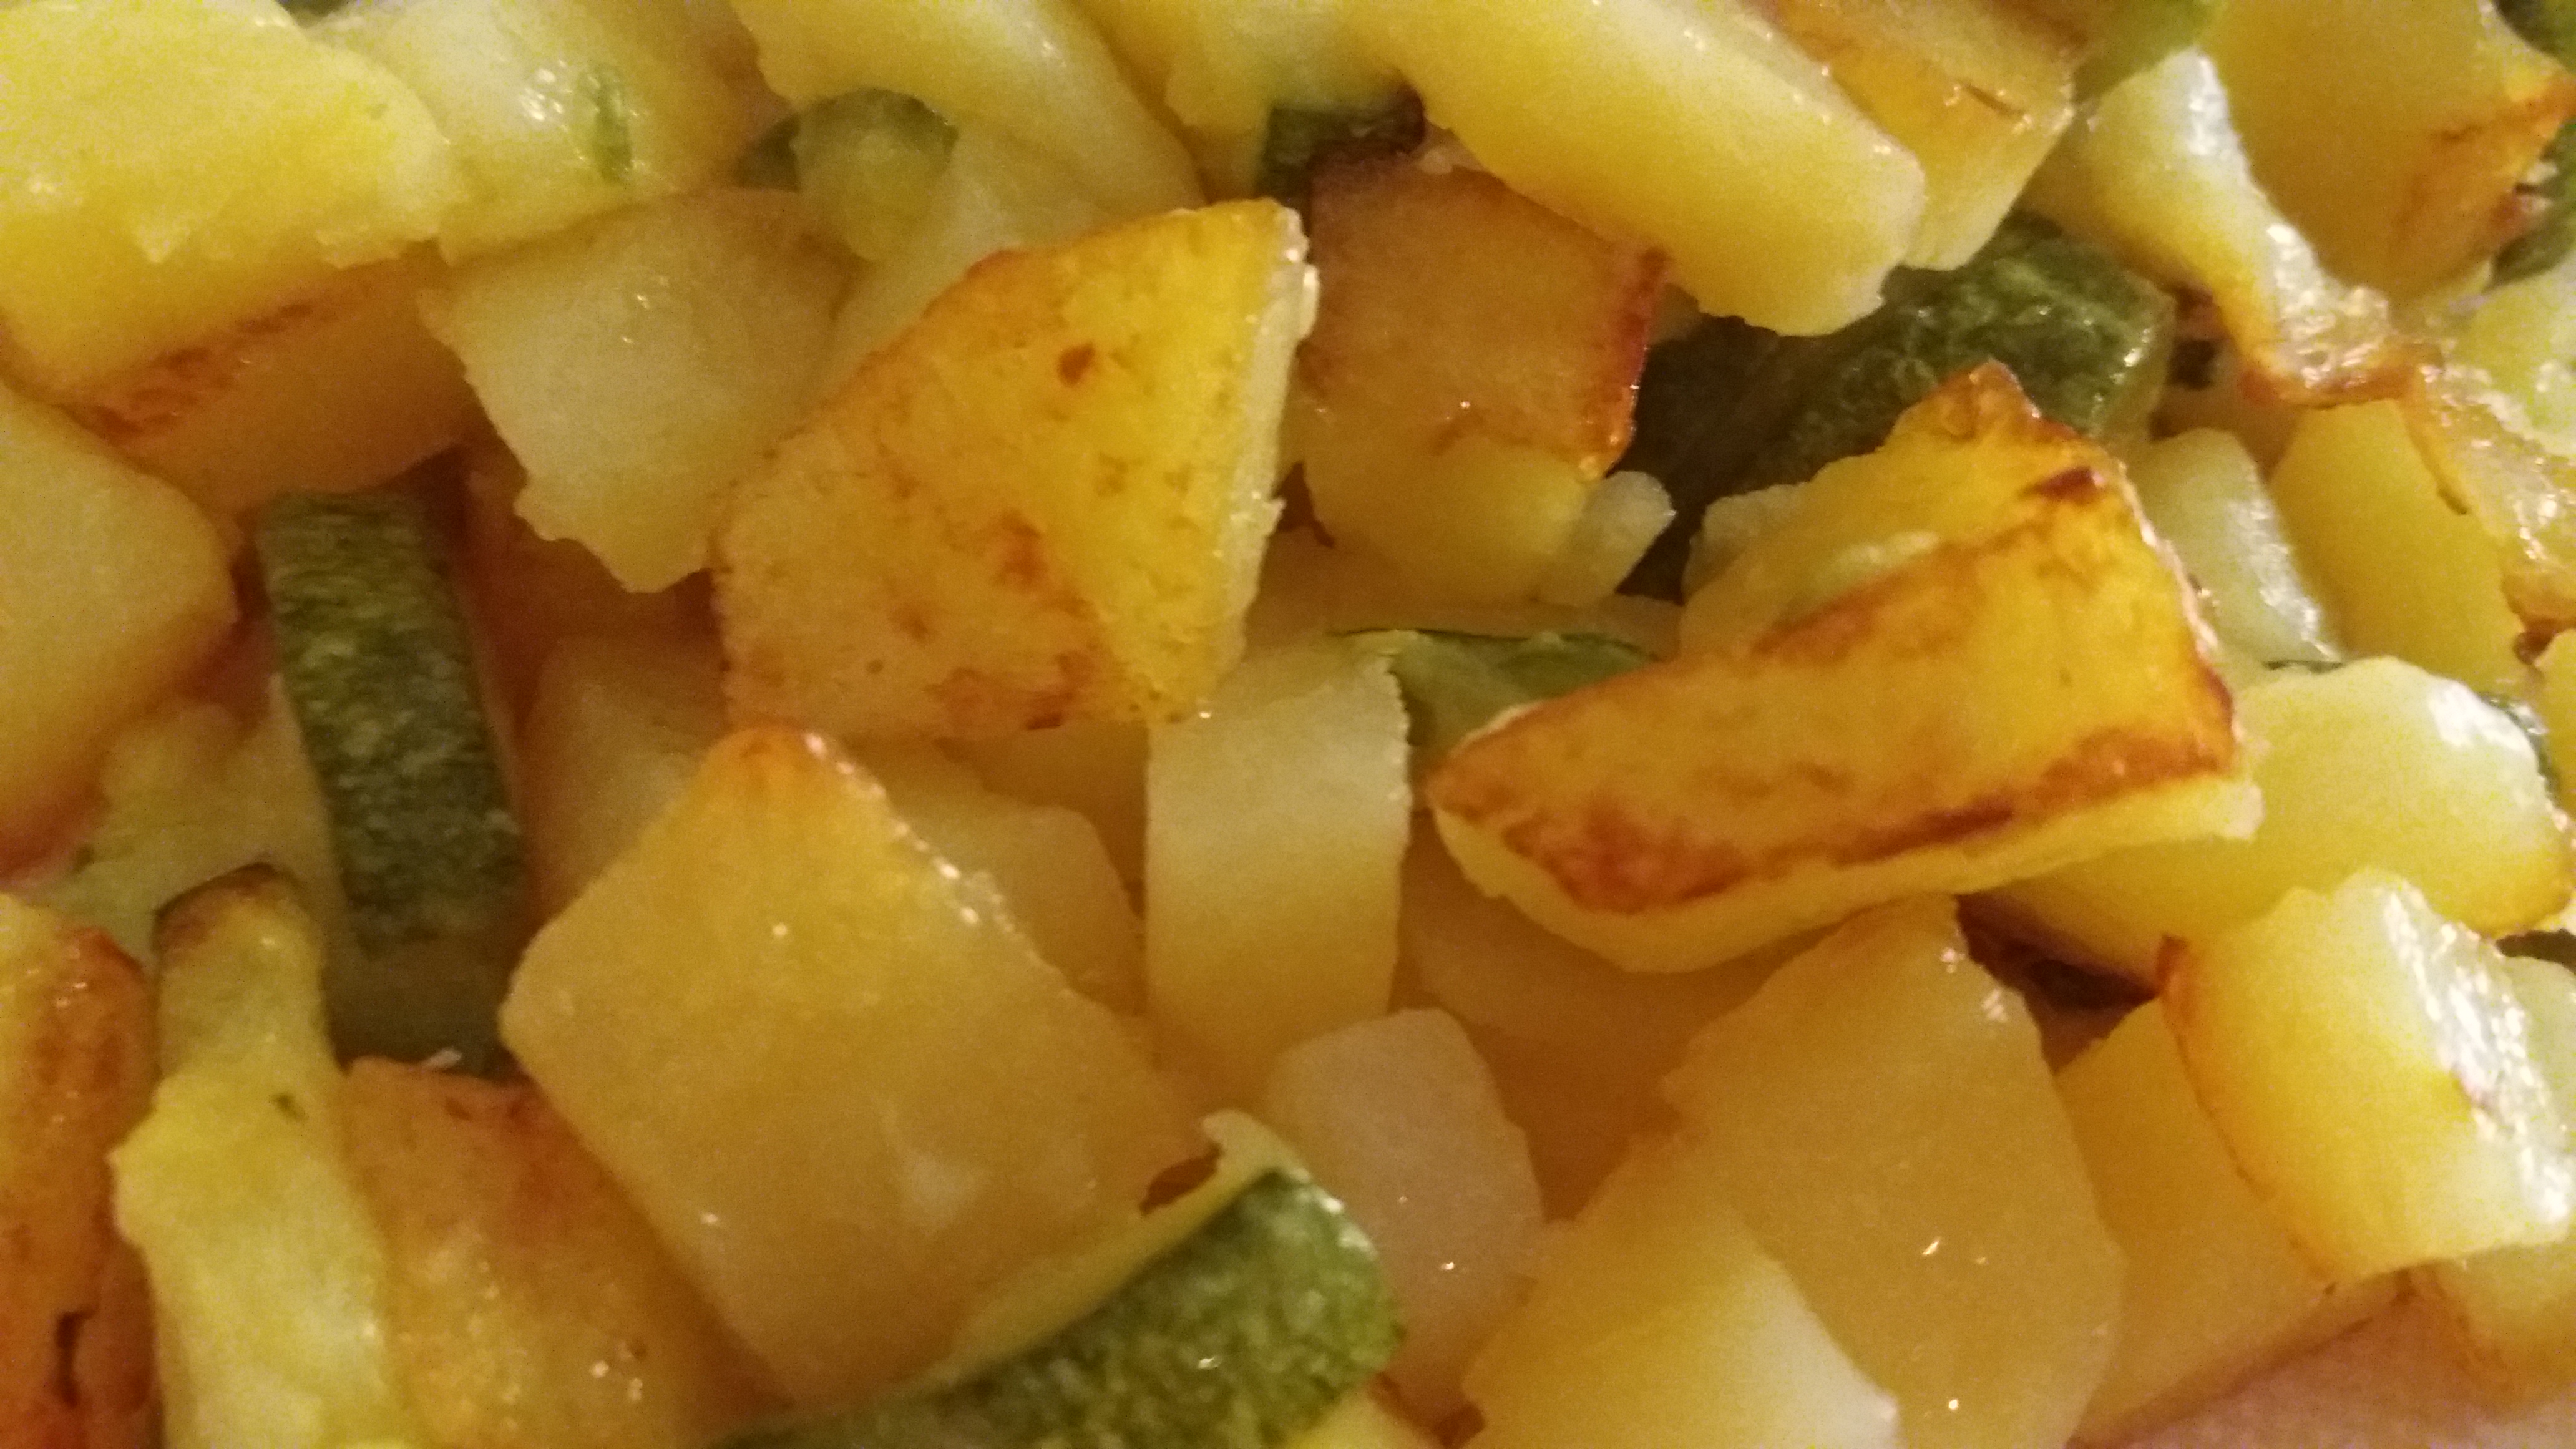 Ricette Per Zucchini In Padella.Patate E Zucchine In Padella Ricetta Veloce Il Pizzico Di Sale